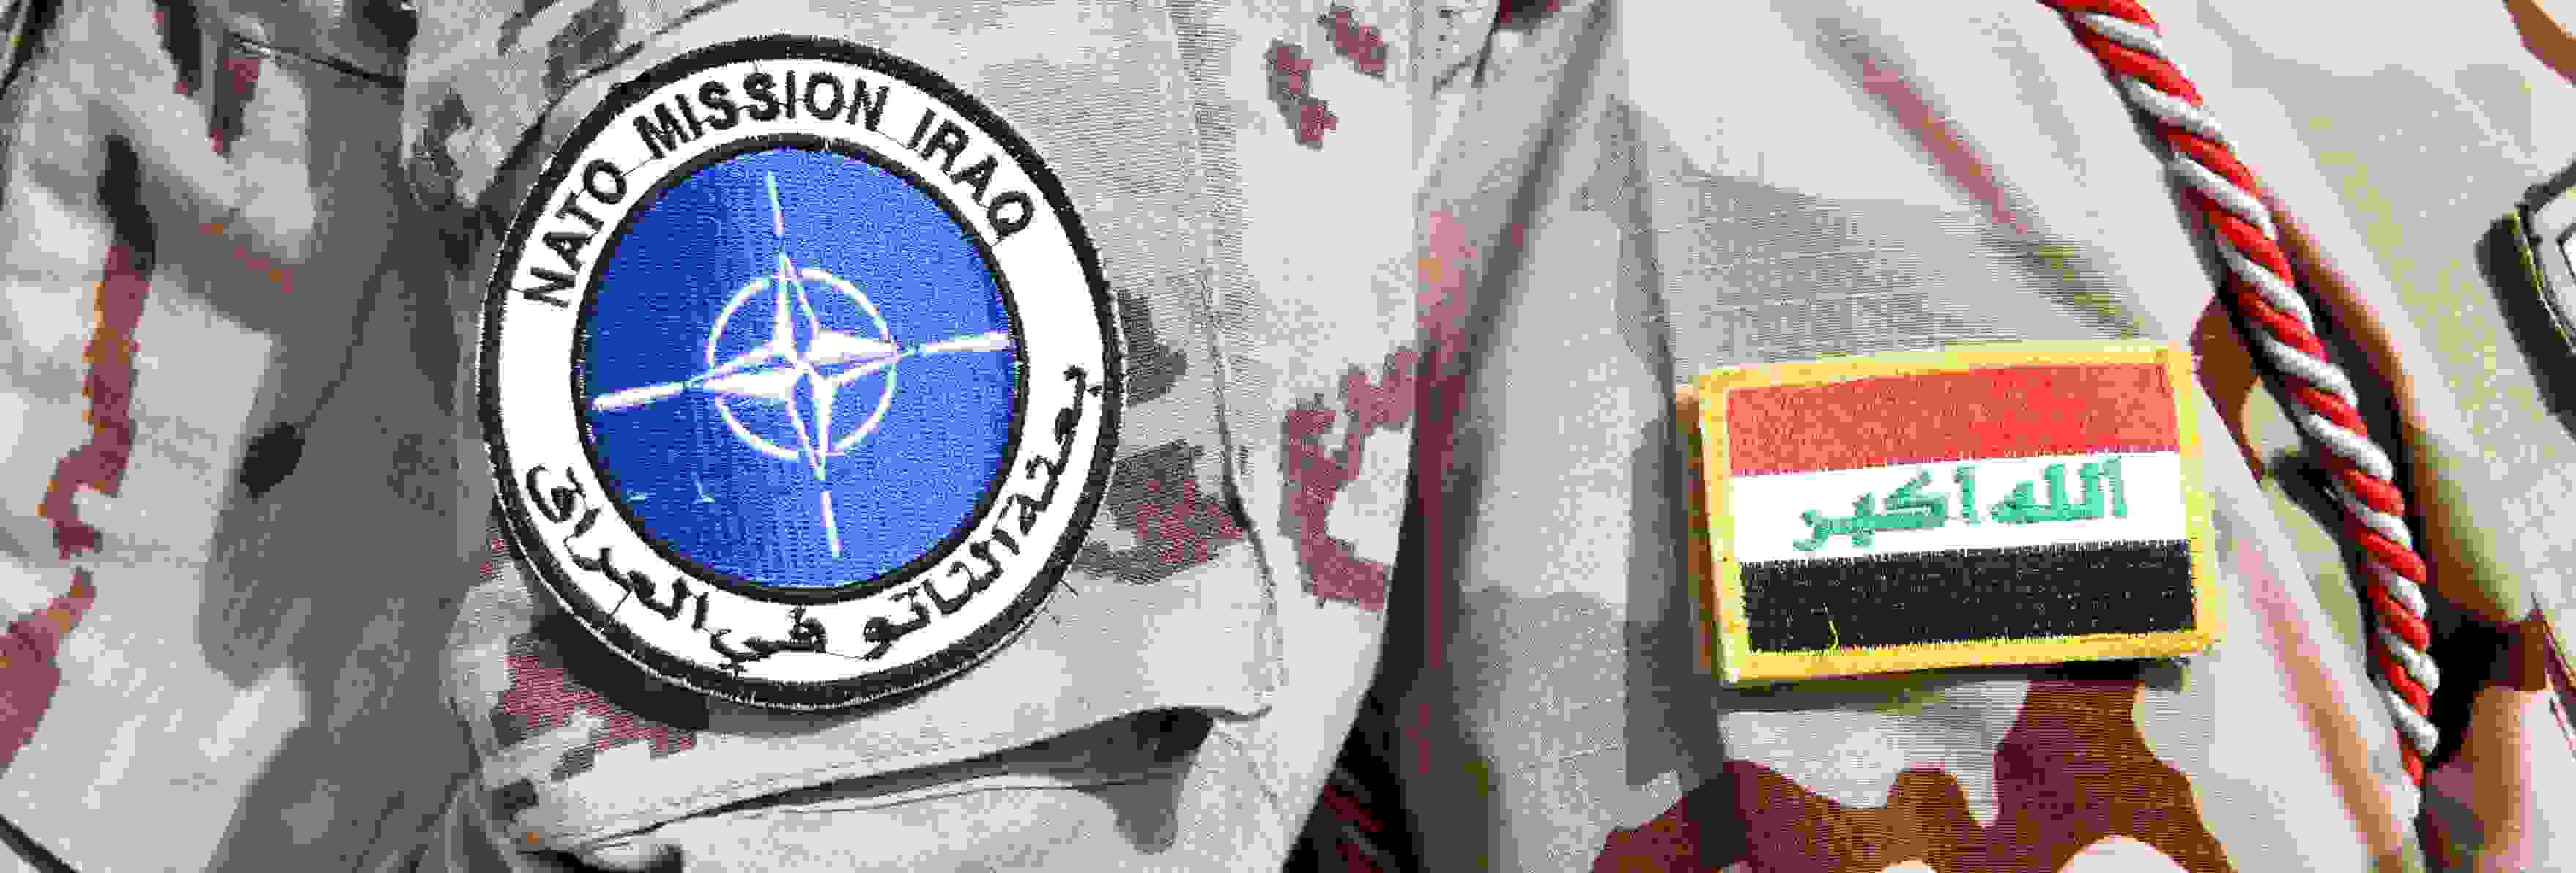 NATO Mission IRAQ